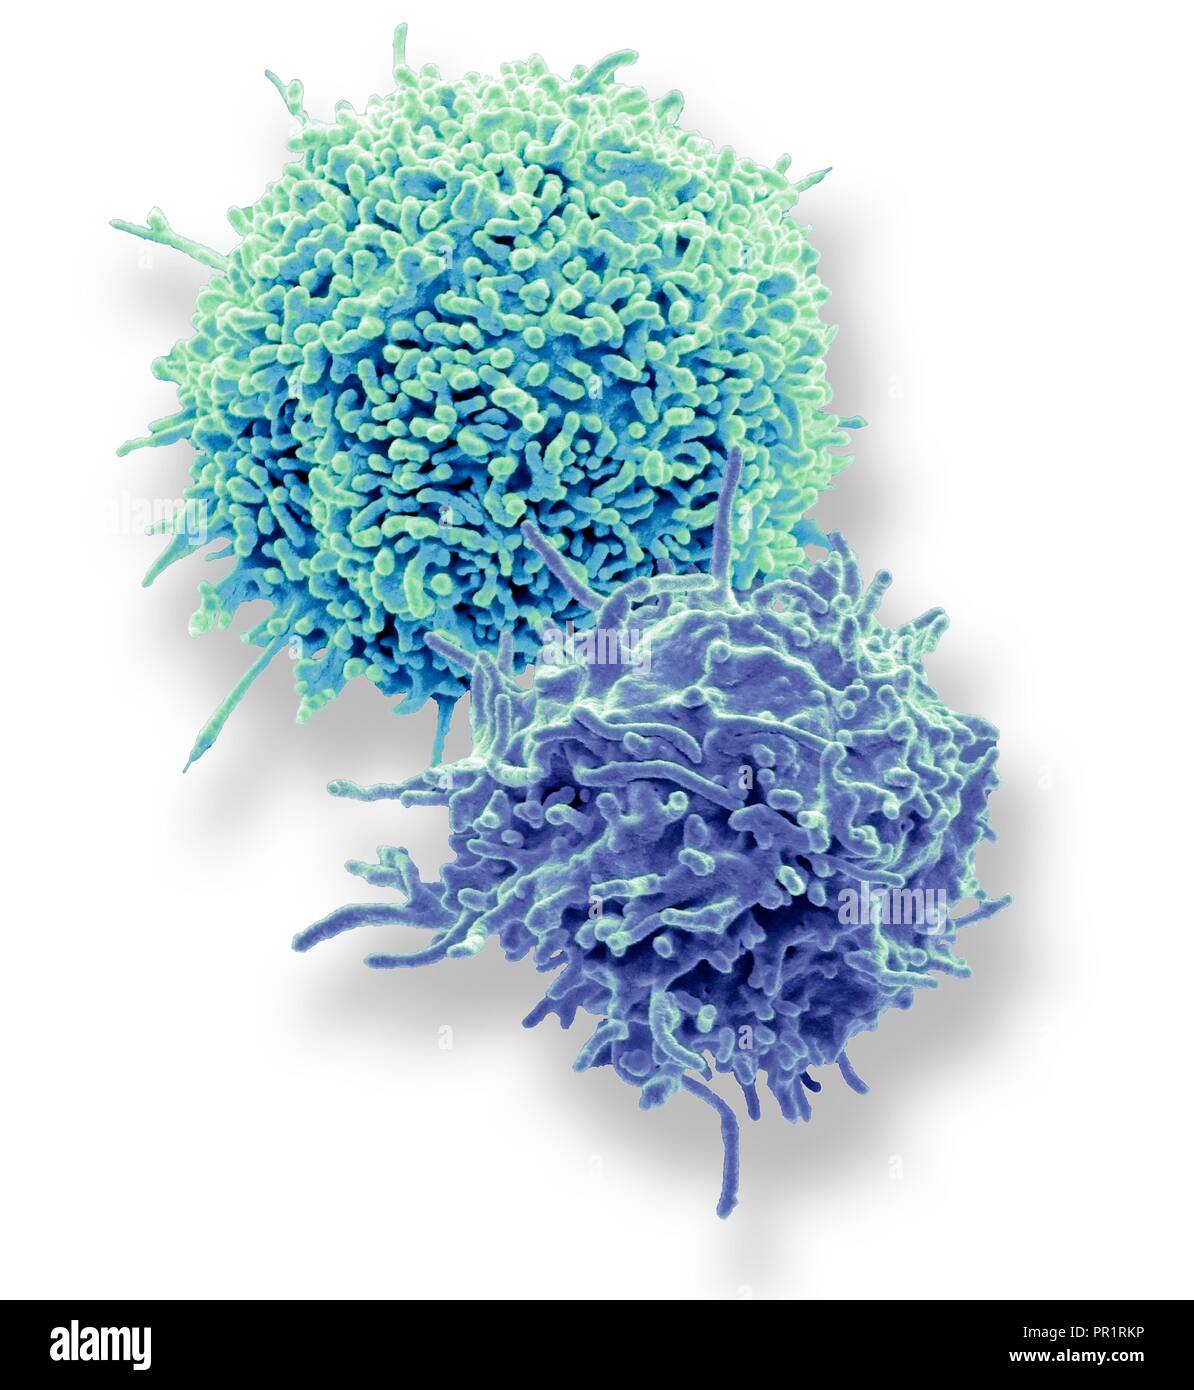 Appoggio i linfociti T. Color scanning electron microfotografia (SEM) di riposo T linfociti provenienti da un campione di sangue umano. Linfociti T, o le cellule T, sono un tipo di globuli bianchi del sangue e dei componenti del sistema immunitario del corpo. Esse maturano nel timo. I linfociti T riconoscono un sito specifico sulla superficie degli agenti patogeni o oggetti estranei (antigeni), legarsi ad essa e diventare attivato per produrre anticorpi o cellule di eliminare quell'antigene. Modello di cortesia del Professor Greg torri, University College di Londra, Regno Unito. Ingrandimento: x7000 quando stampata a 10 cm di larghezza. Foto Stock